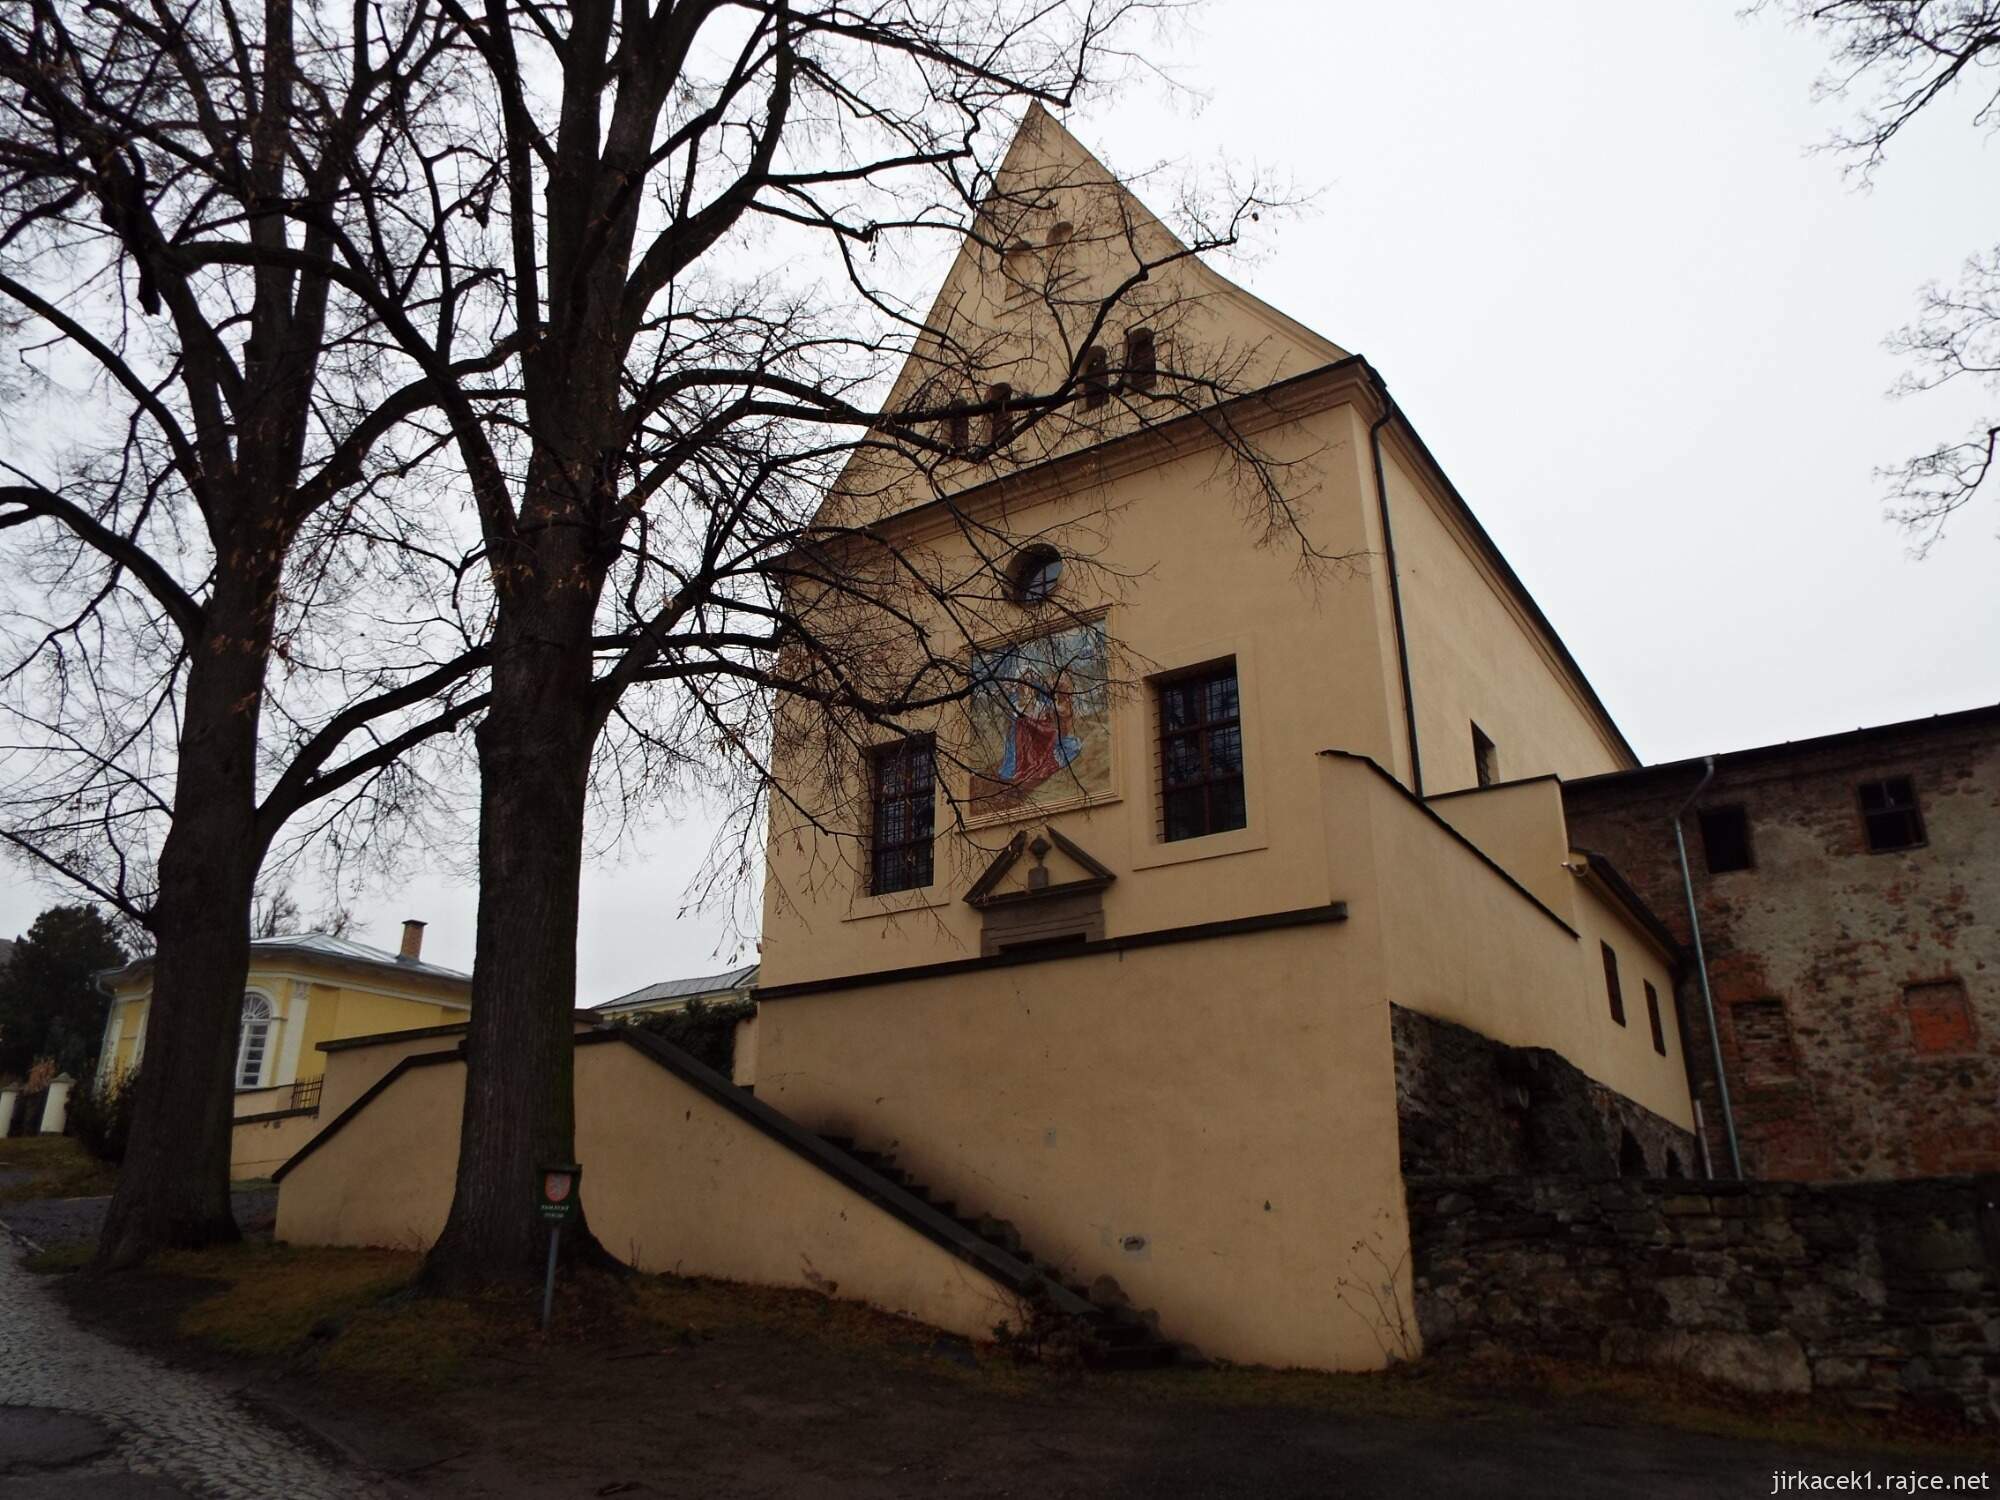 C - Fulnek - kostel sv. Josefa a kapucínský klášter 07 - čelní pohled na kostel